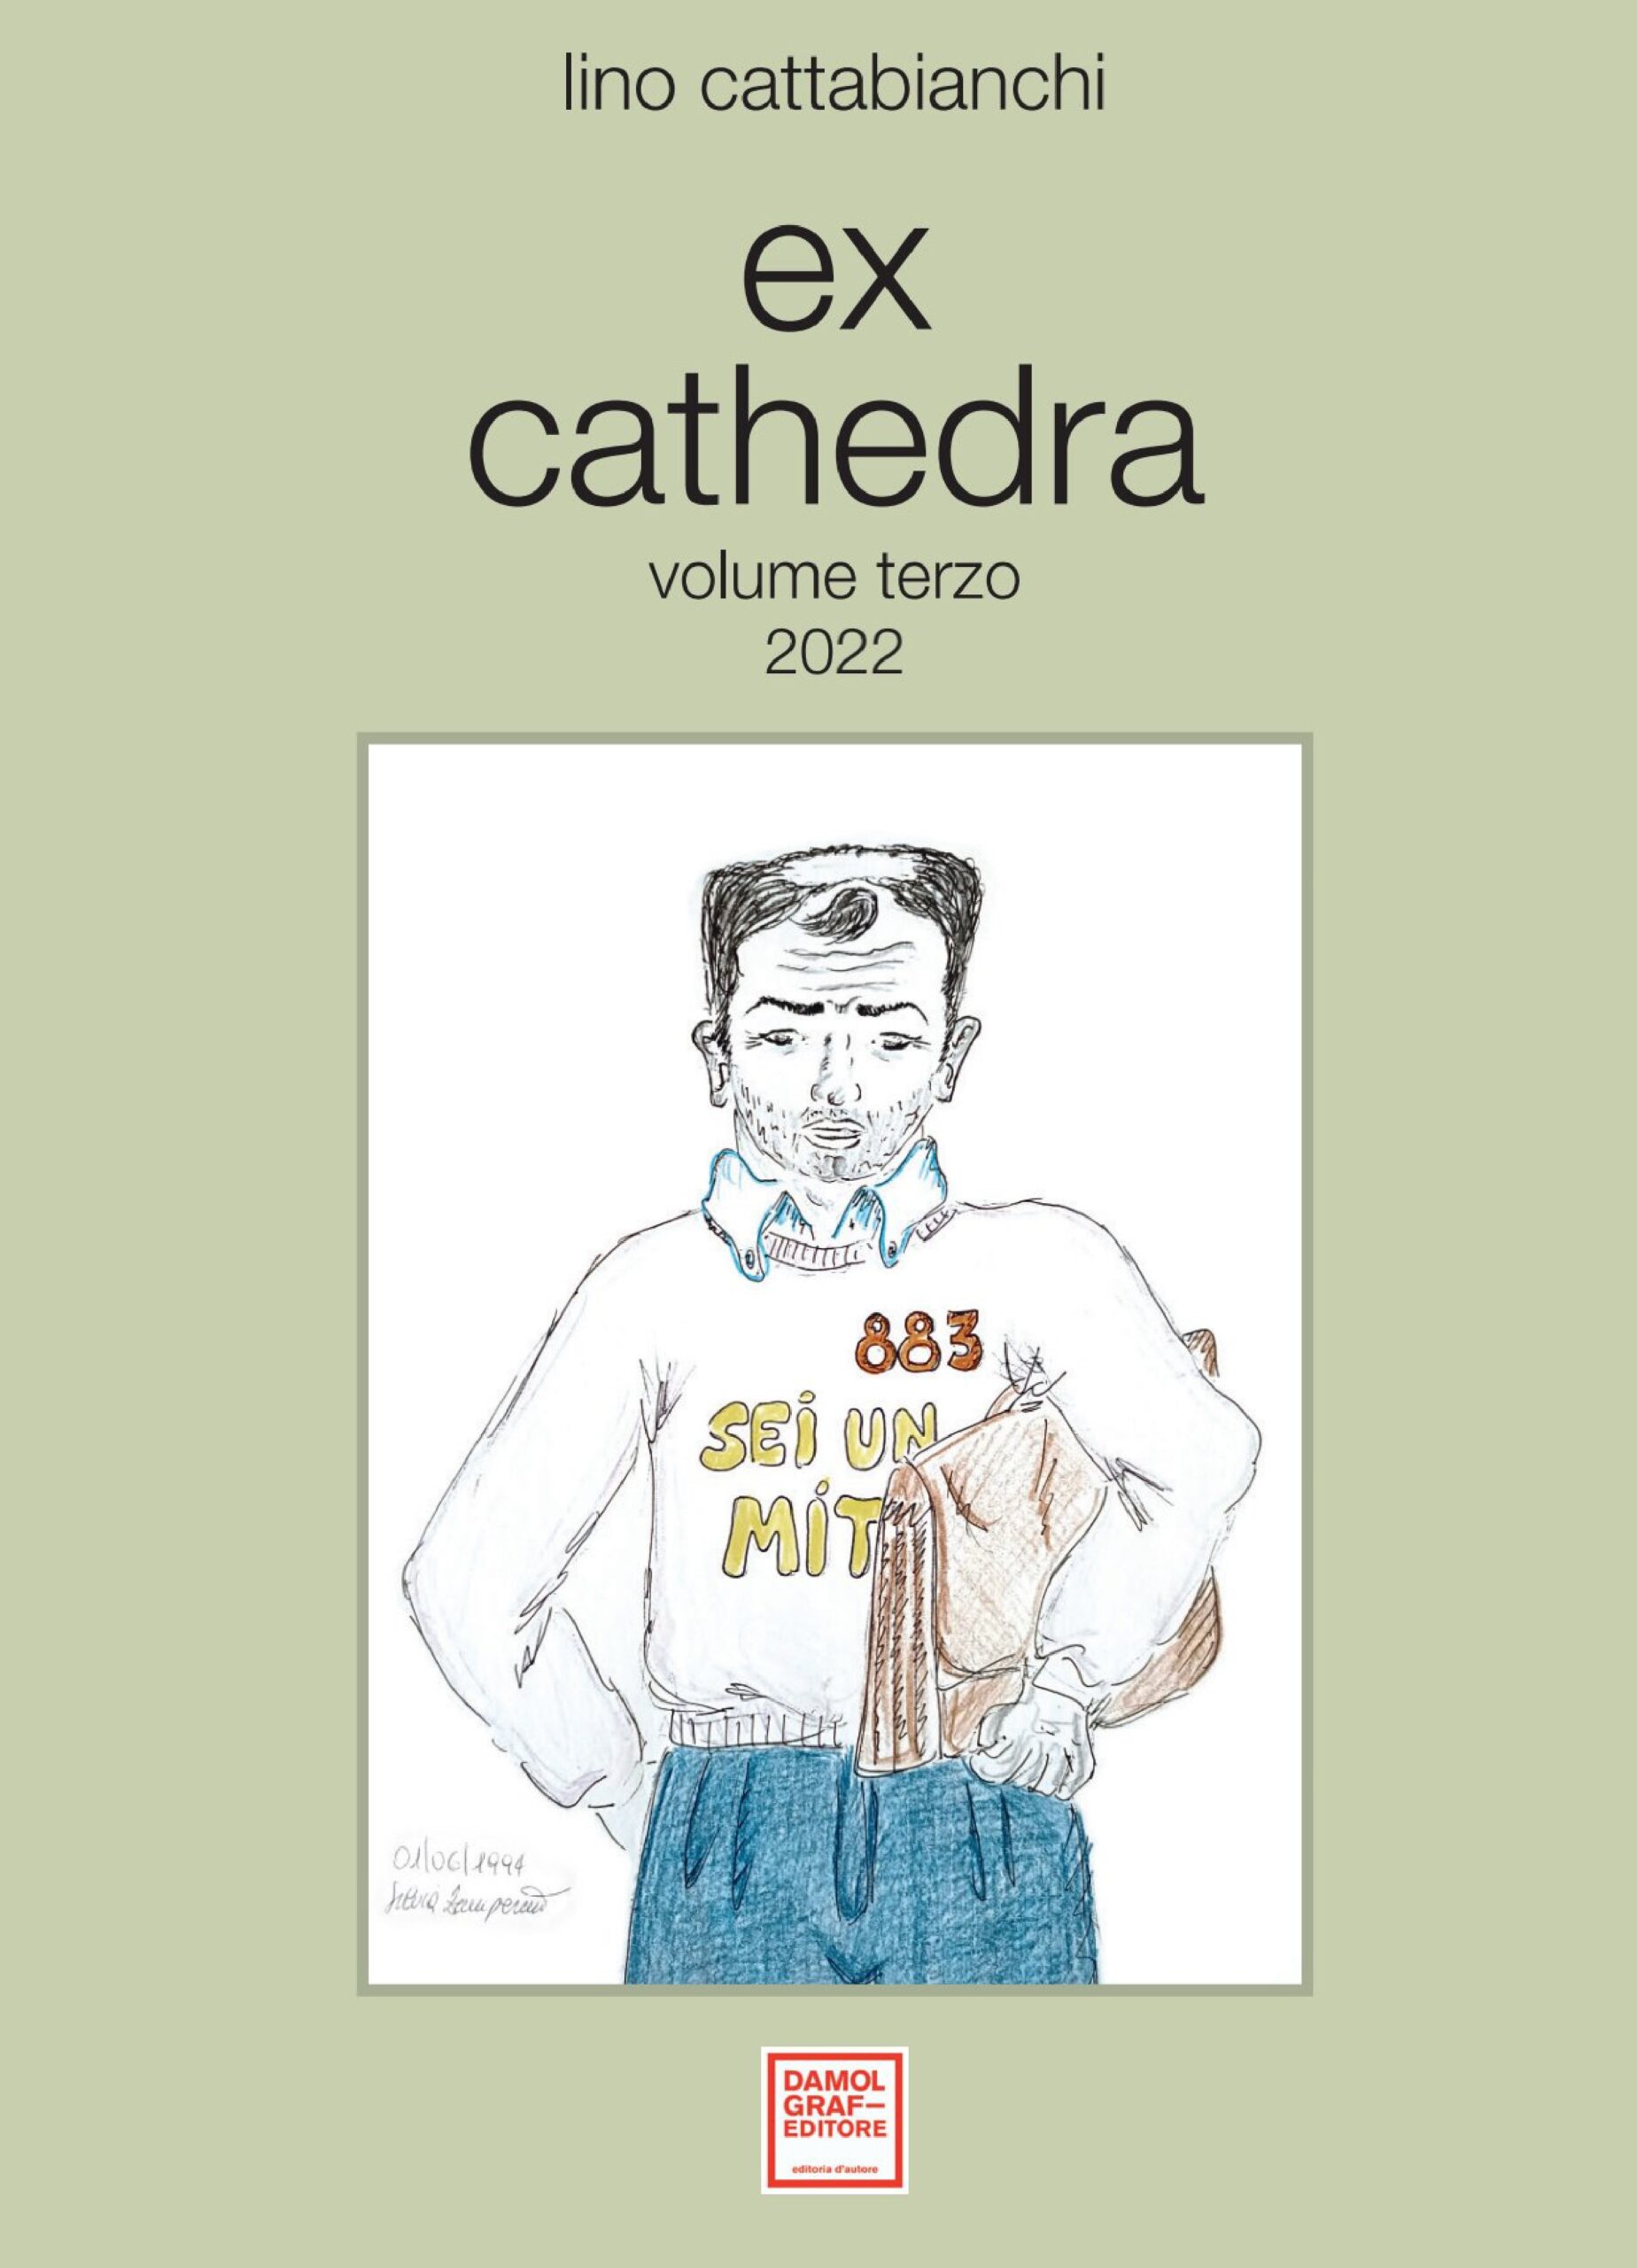 Ex Cathedra: questa sera la presentazione del terzo volume di Lino Cattabianchi